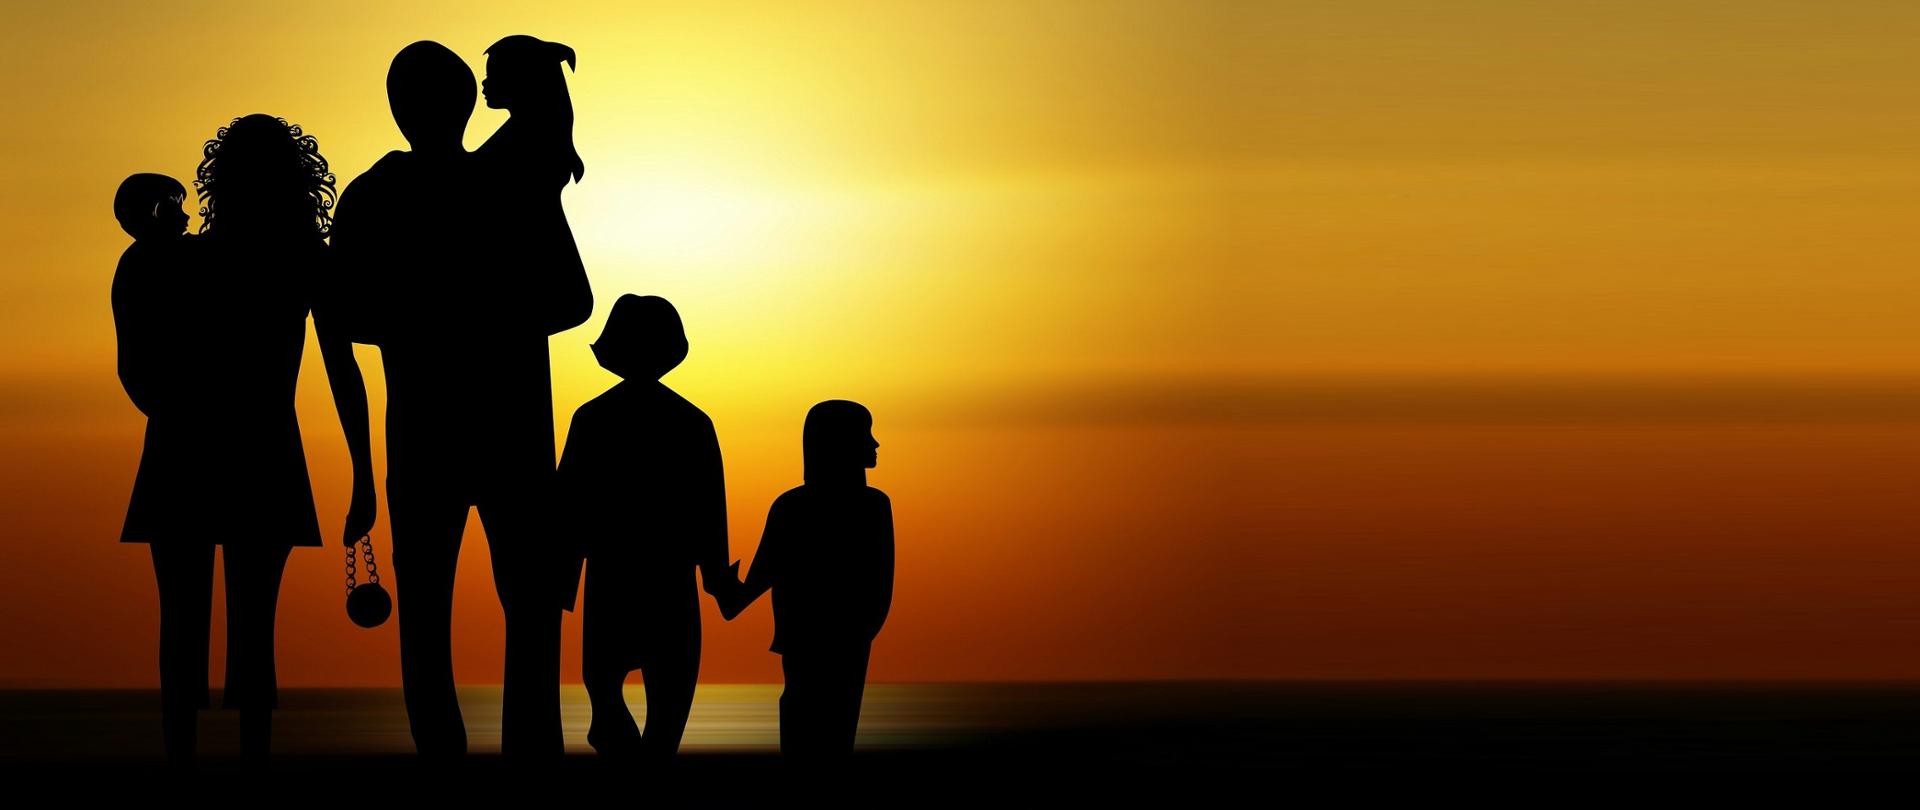 Duża rodzina - cienie ludzi. Dwóch dorosłych i troje dzieci na tle zachodzącego słońca